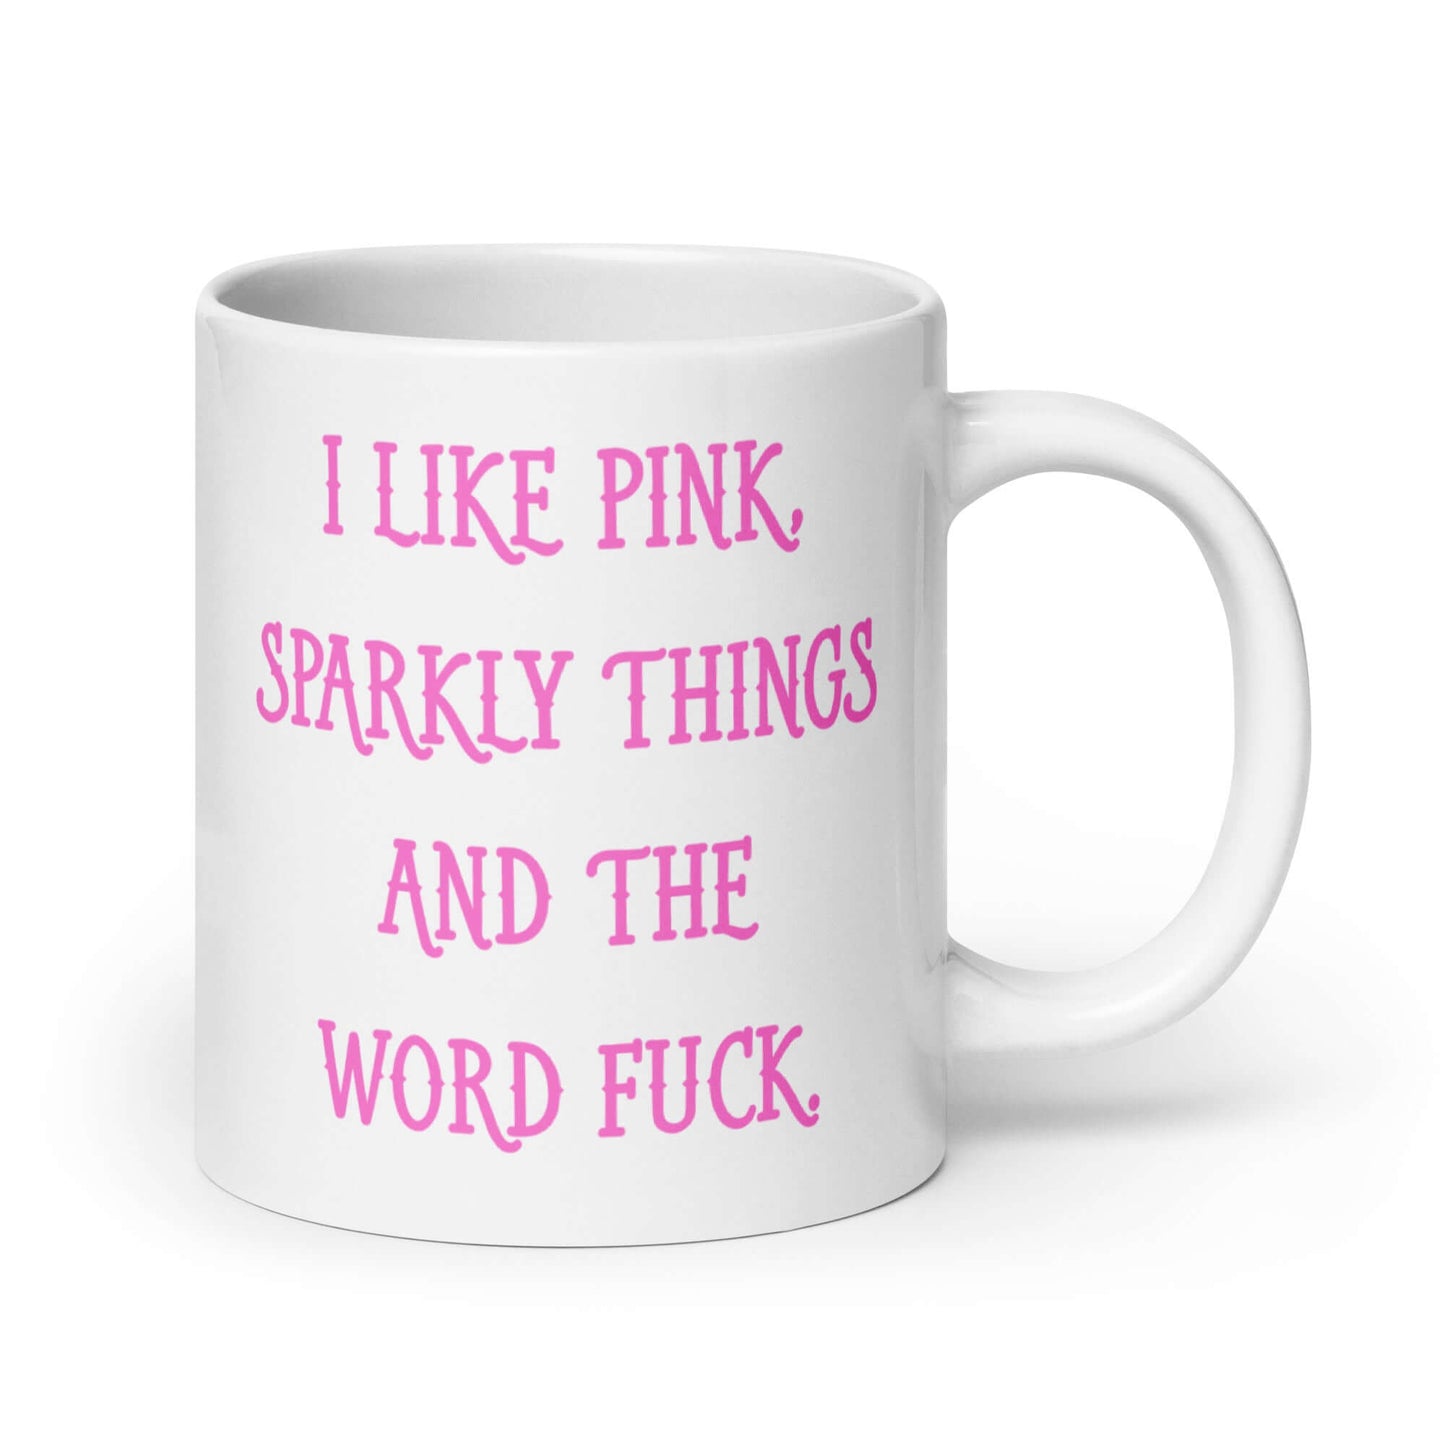 I like pink and the word fuck sarcastic mug